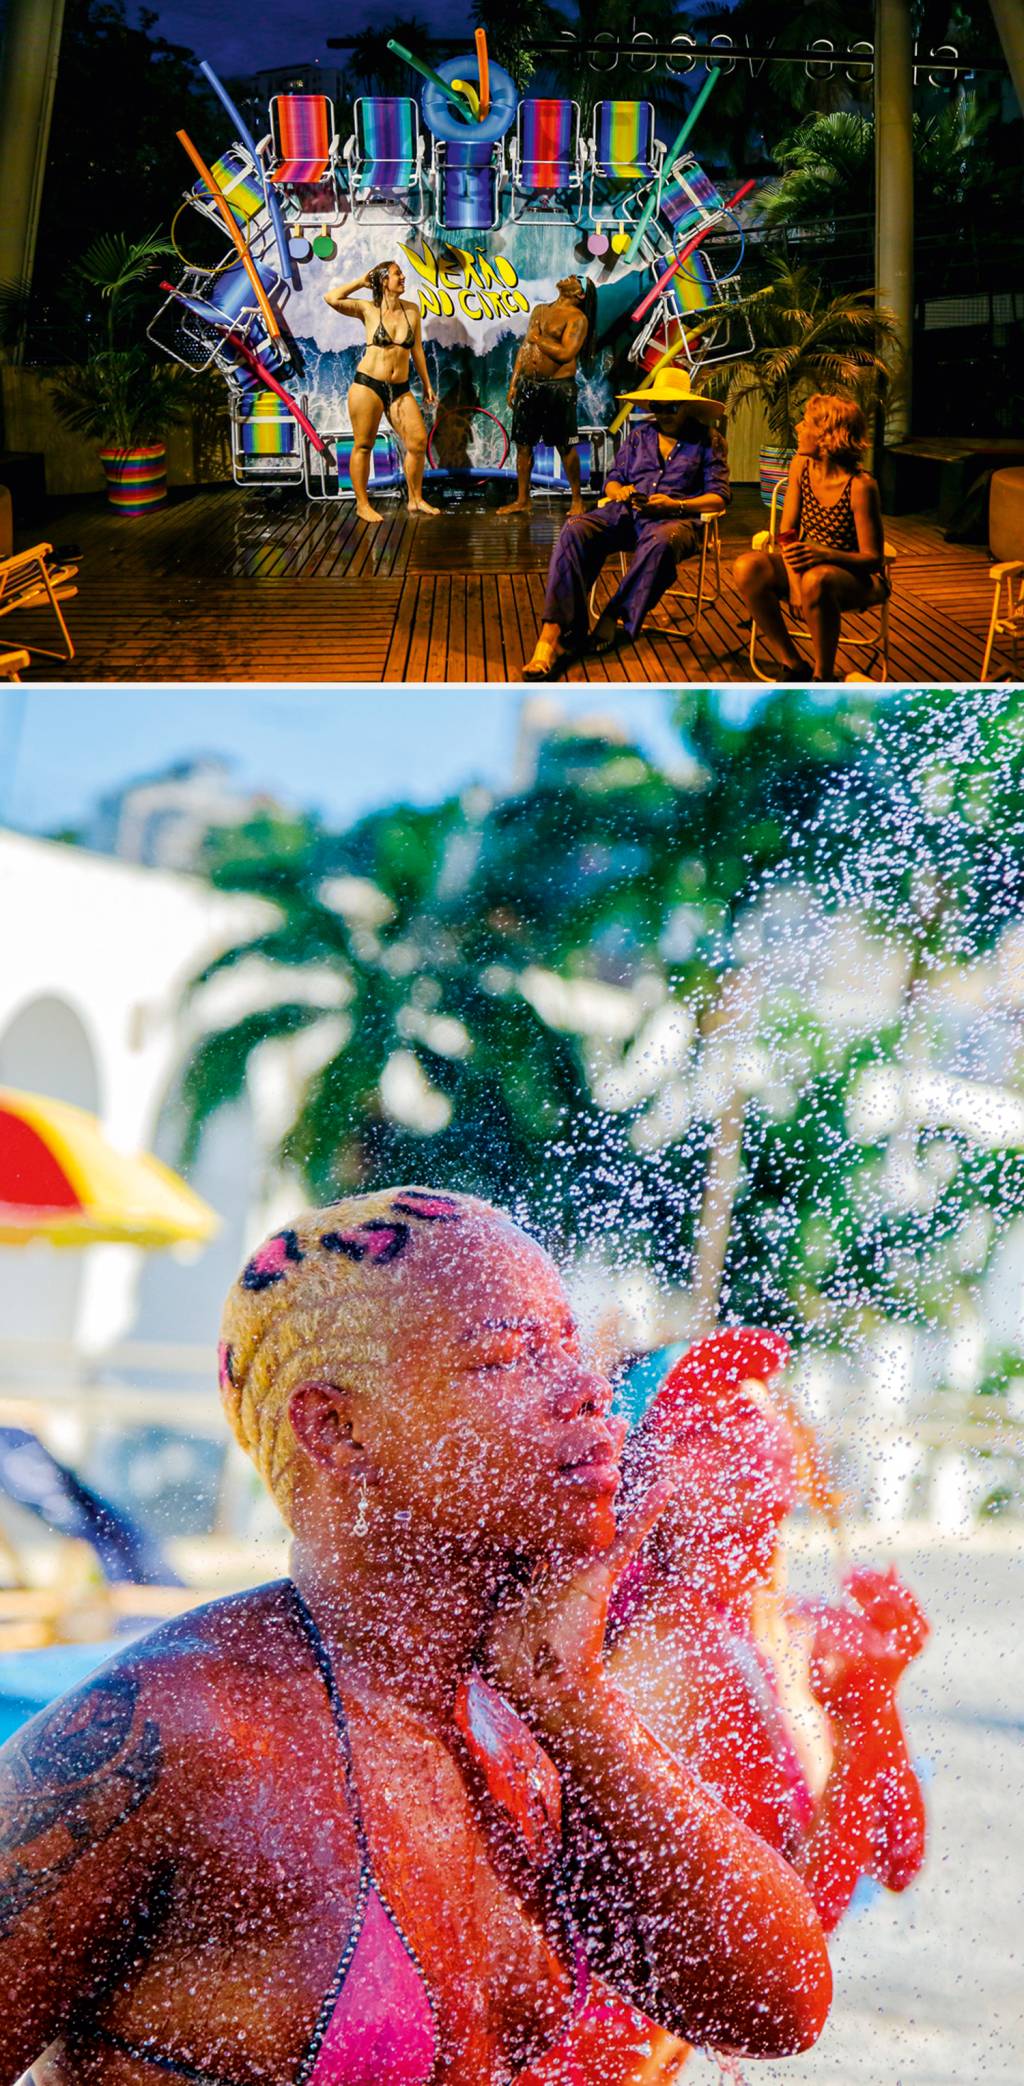 Banho de chuveiro: atração em dias de calor no Circo (acima) e na Fundição (abaixo)